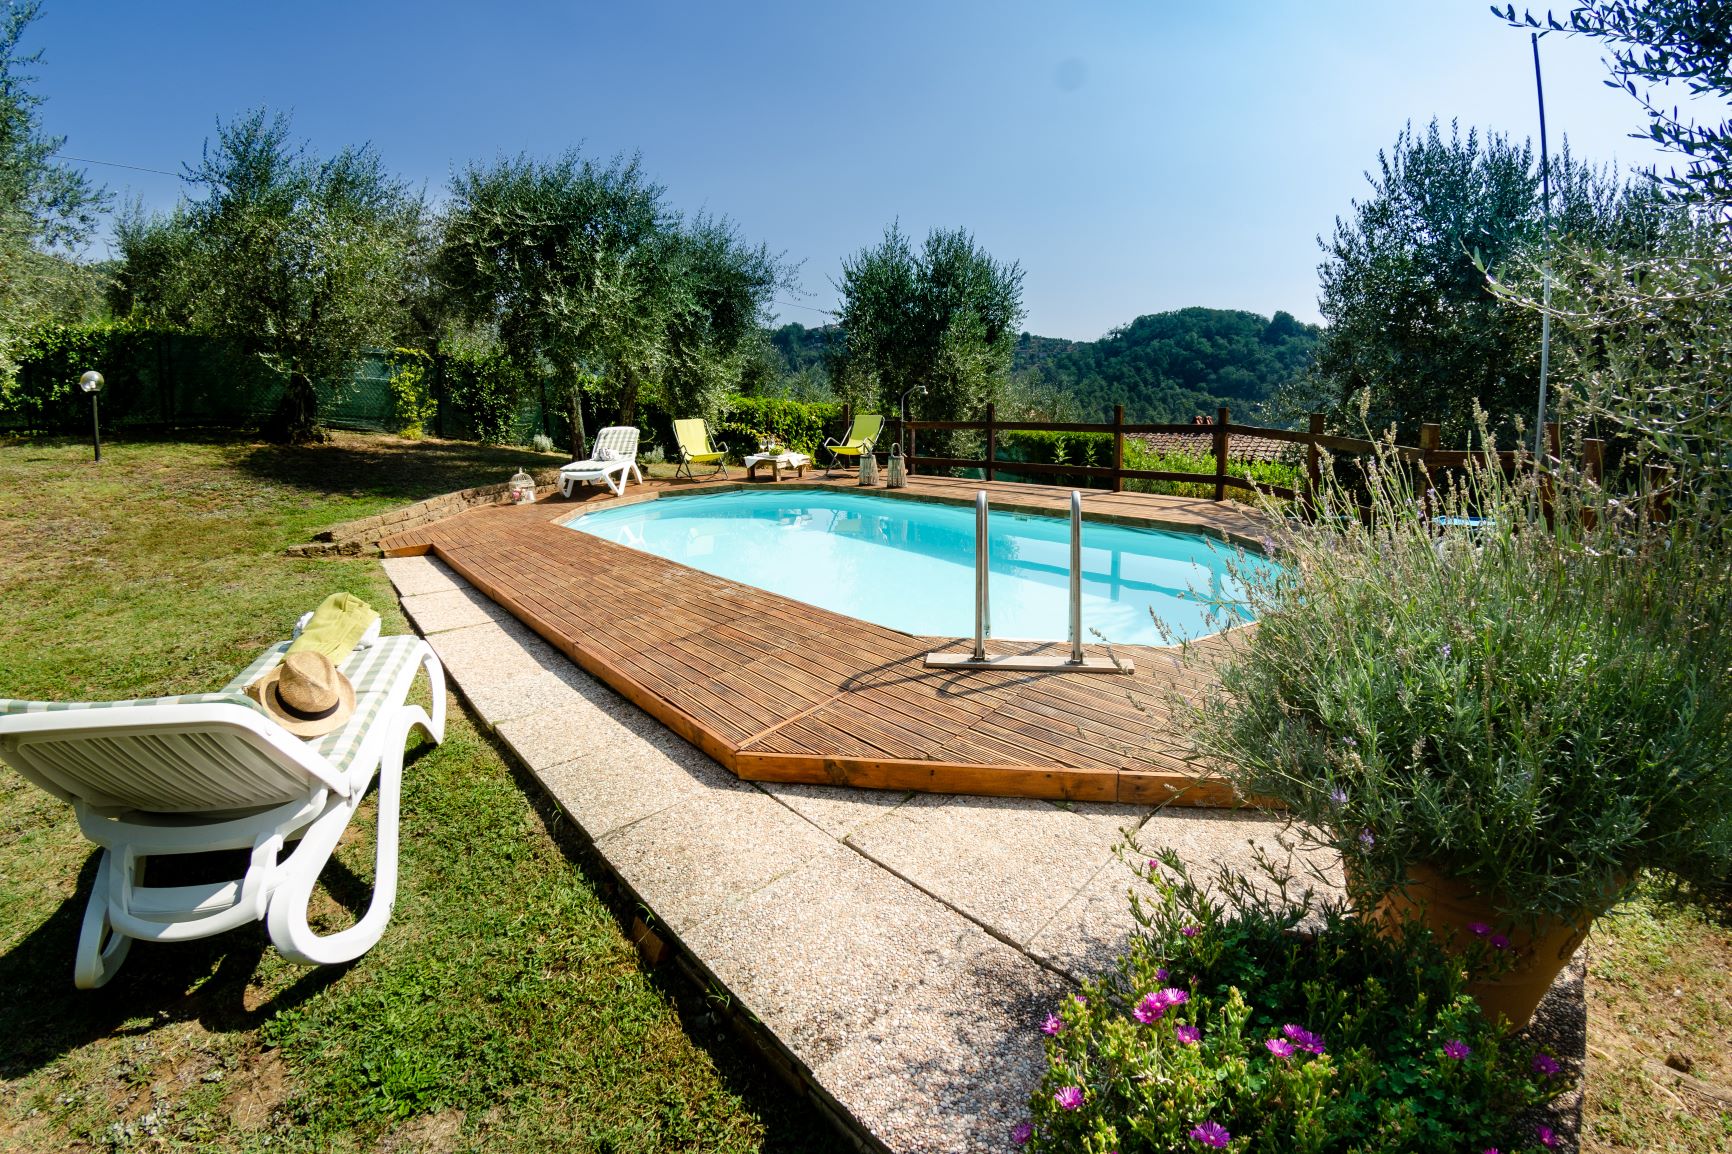 309_b816bc8_Podere Istrice vakantiehuis met prive zwembad Lucca Toscane Toscaansekust (18)